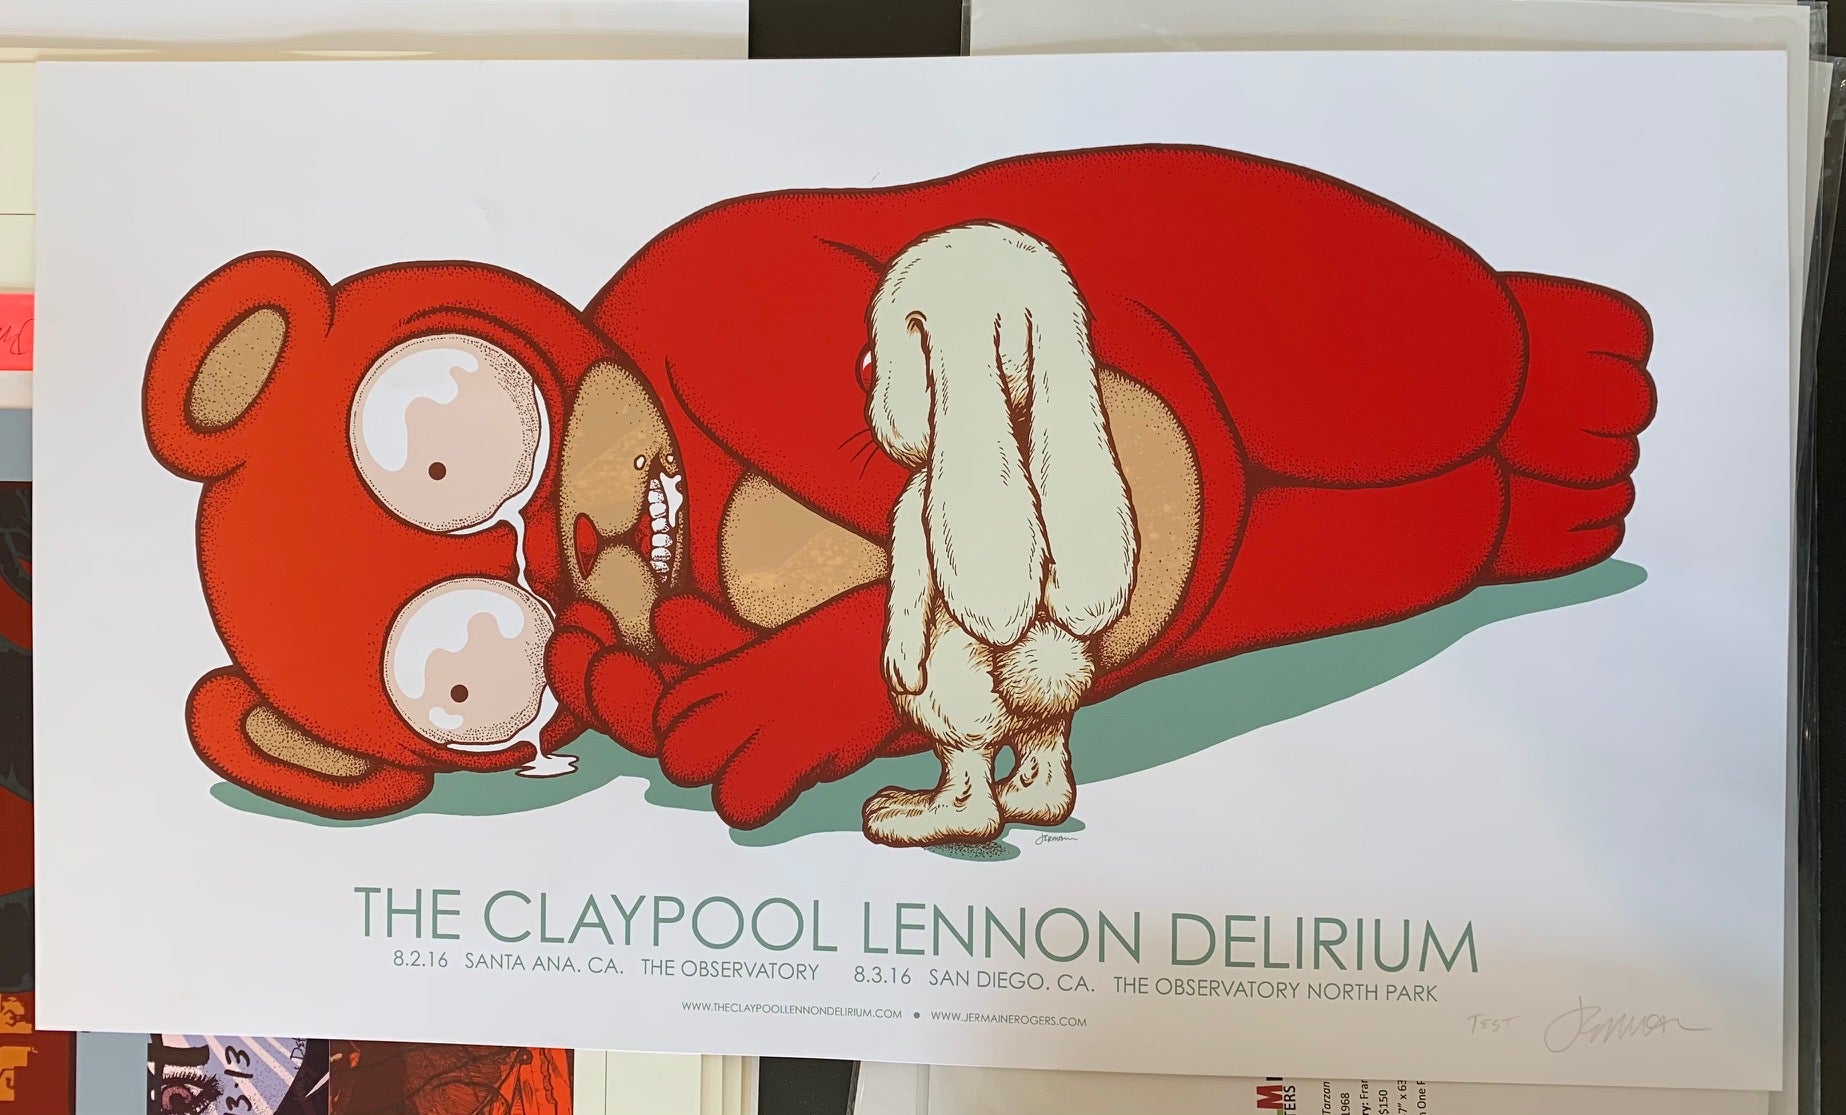 The Claypool Lennon Delirium - Santa Ana, CA - 8.2.16 double sided TEST